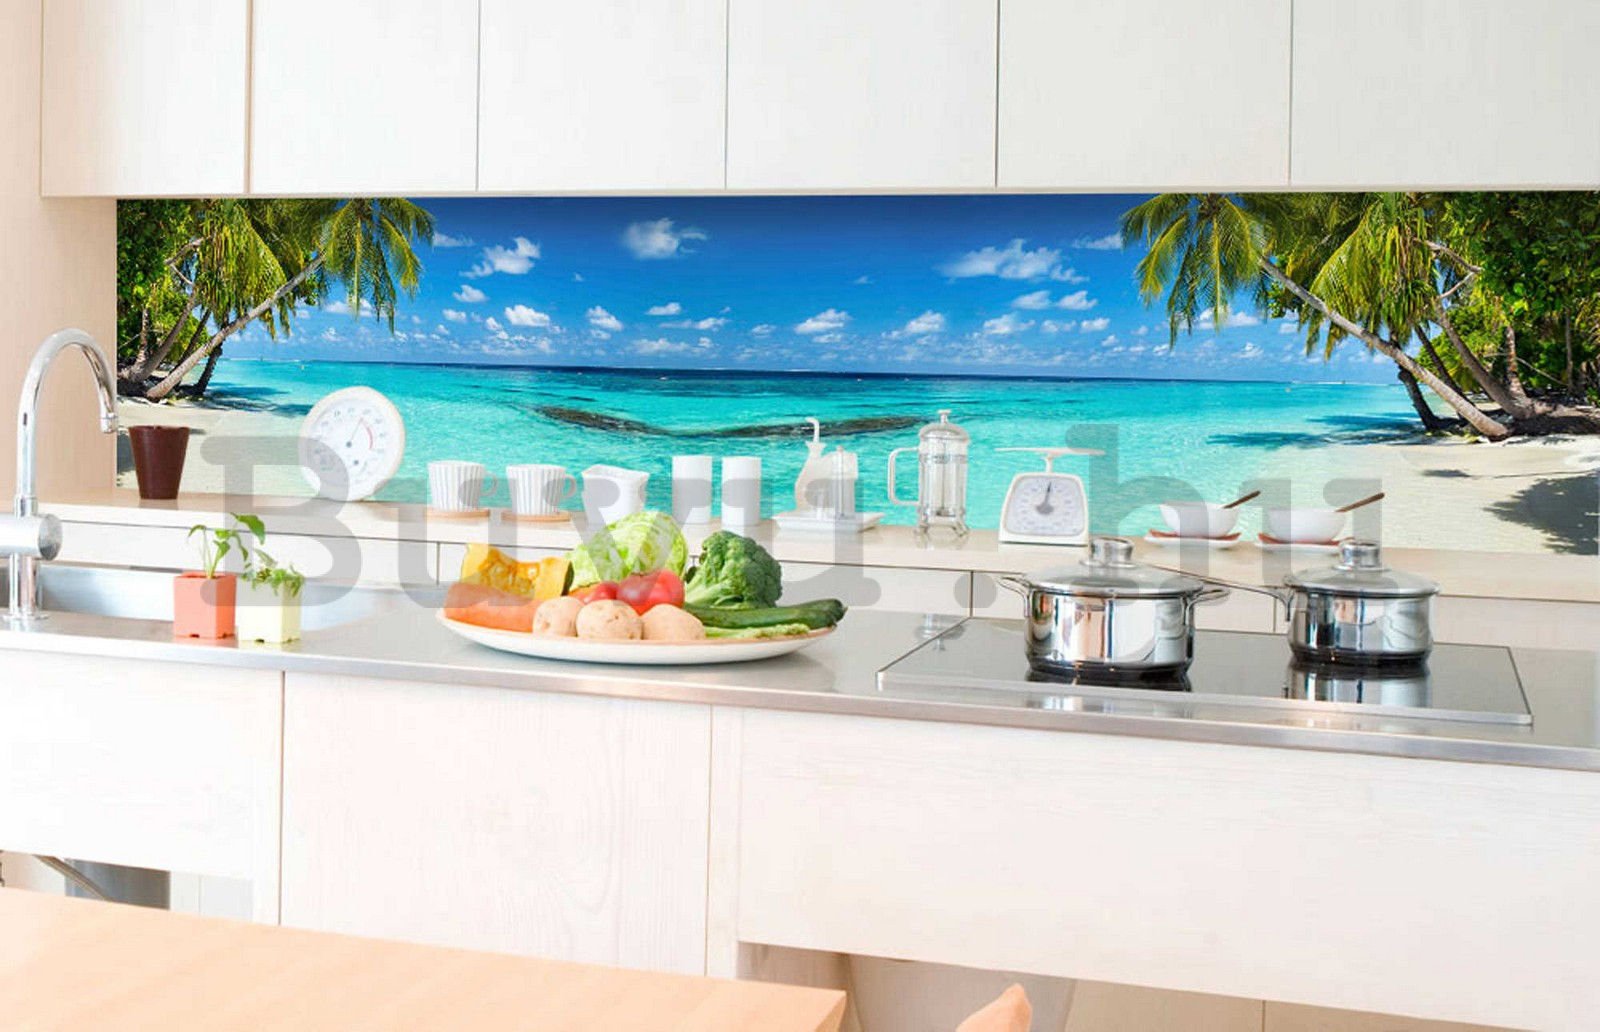 Öntapadós mosható tapéta konyhába - Paradicsom strand, 350x60 cm